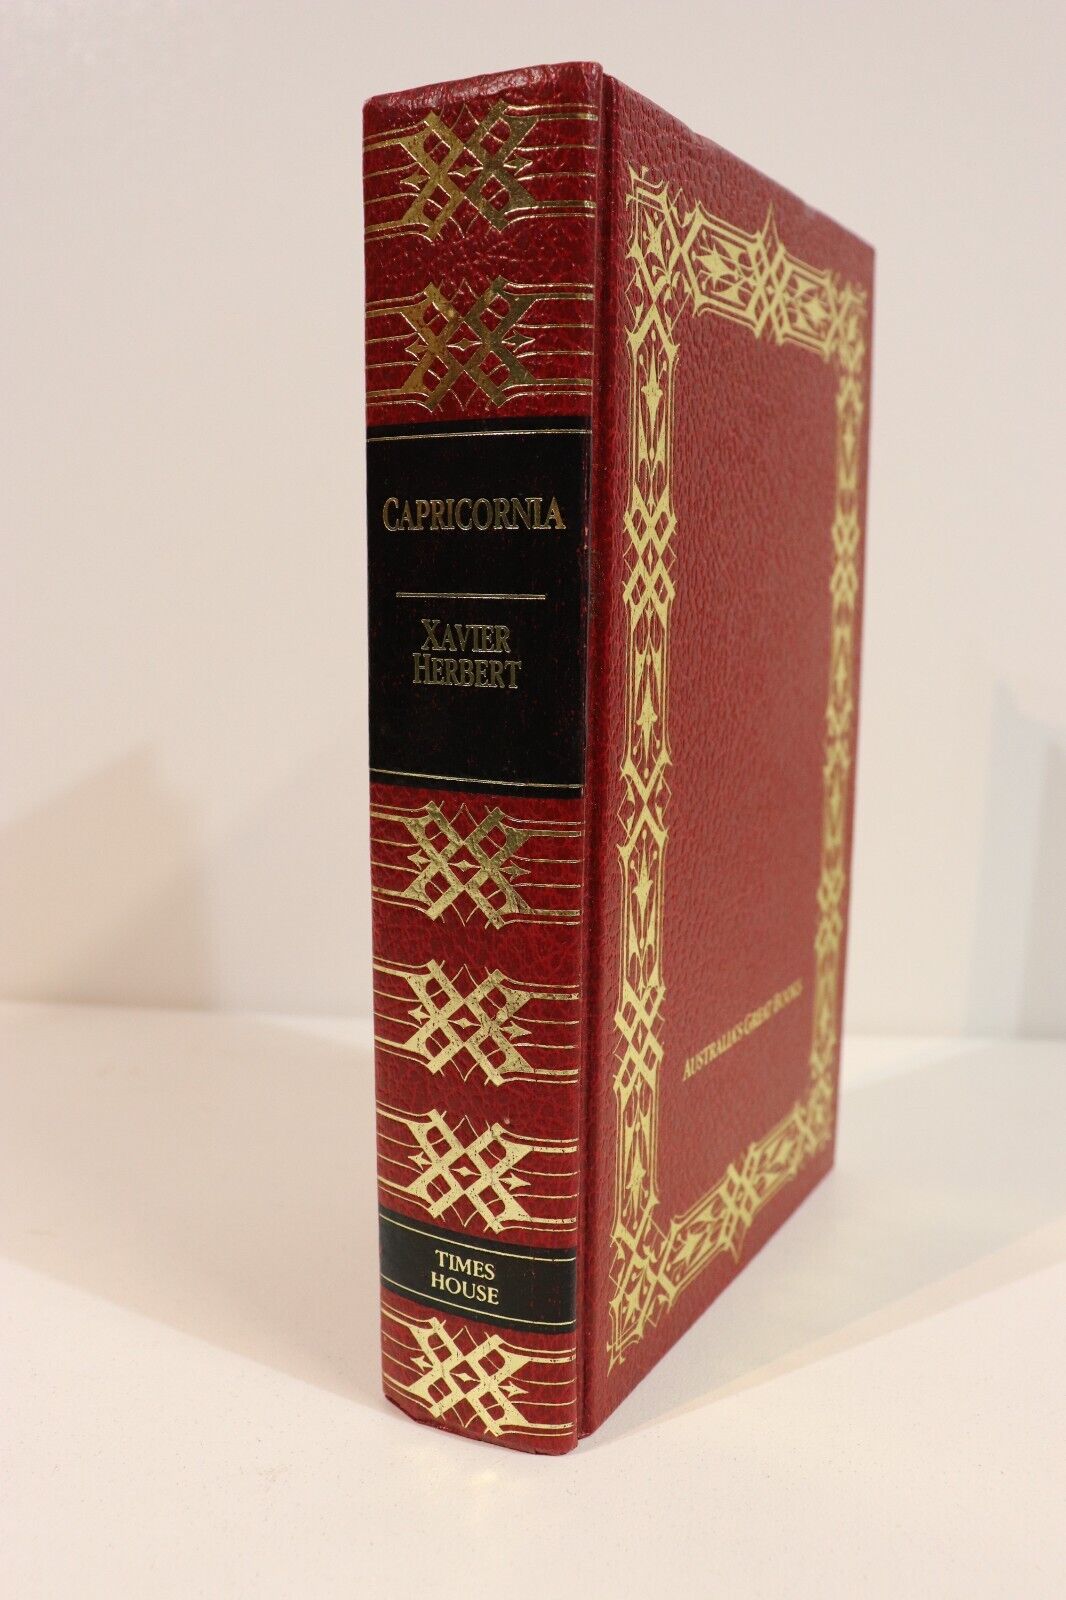 Capricornia: A Novel by Xavier Herbert - 1984 - Australian Literature Book